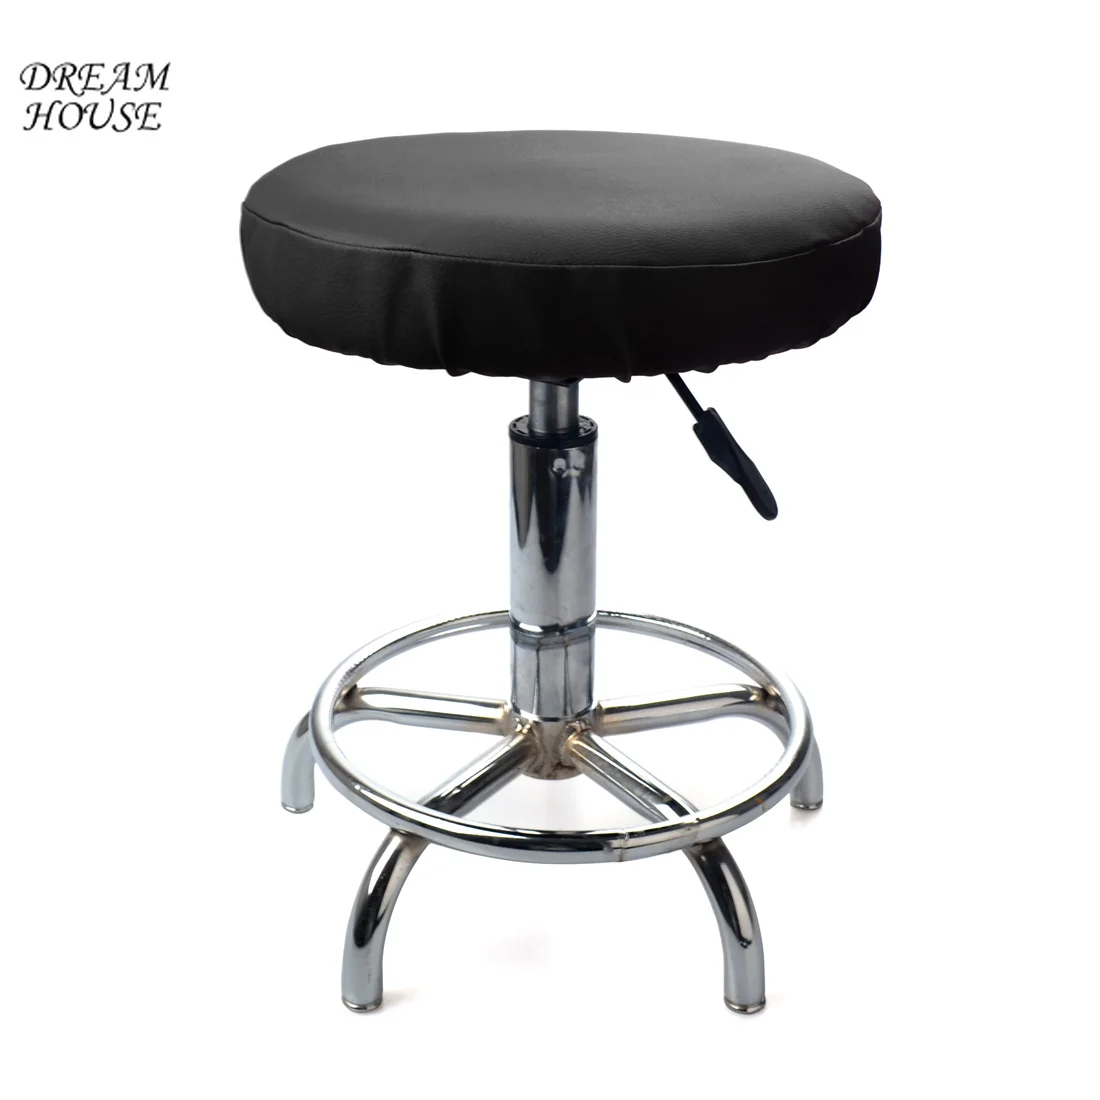 Горячая Распродажа круглый чехол для стула стоматологические эластичные чехлы на кресла чехол для стула обеденный чехол для кресла сплошной цвет